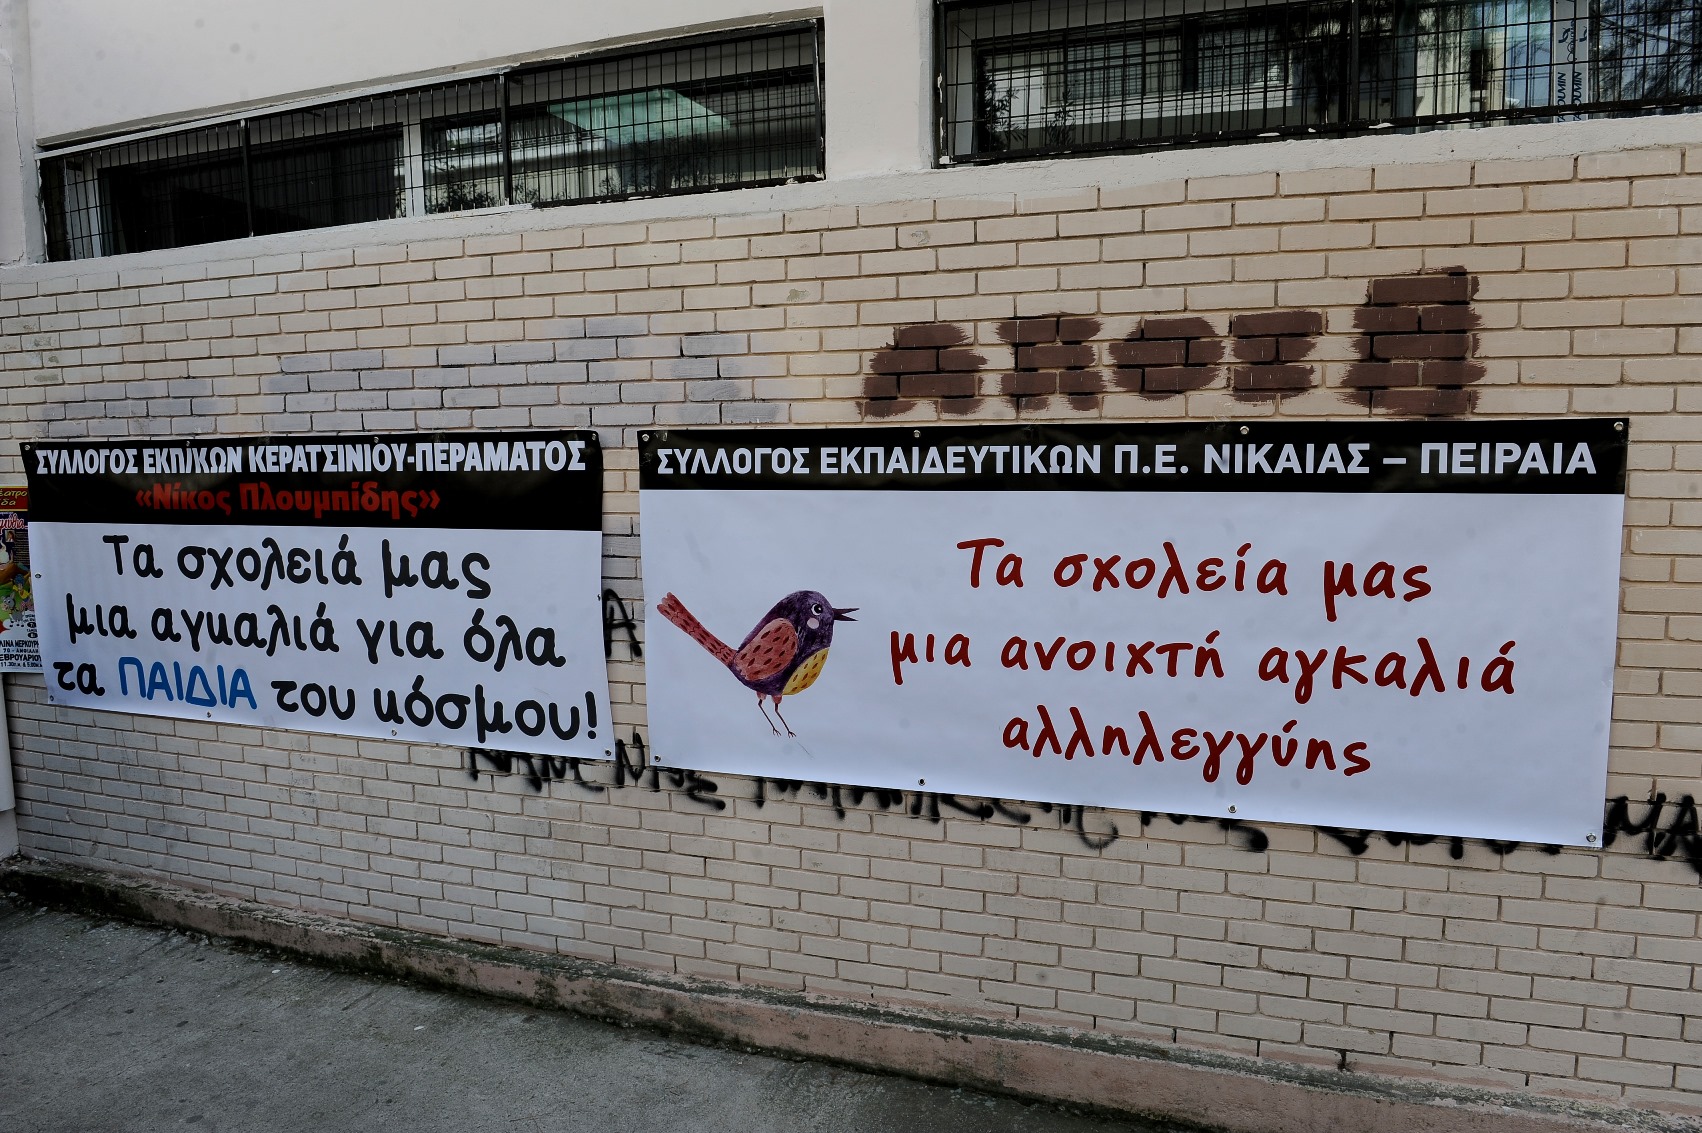 Δήμος Κερατσινίου – Δραπετσώνας: Υποβολή Πρότασης Χρηματοδότησης στο Πρόγραμμα «Αντώνης Τρίτσης»